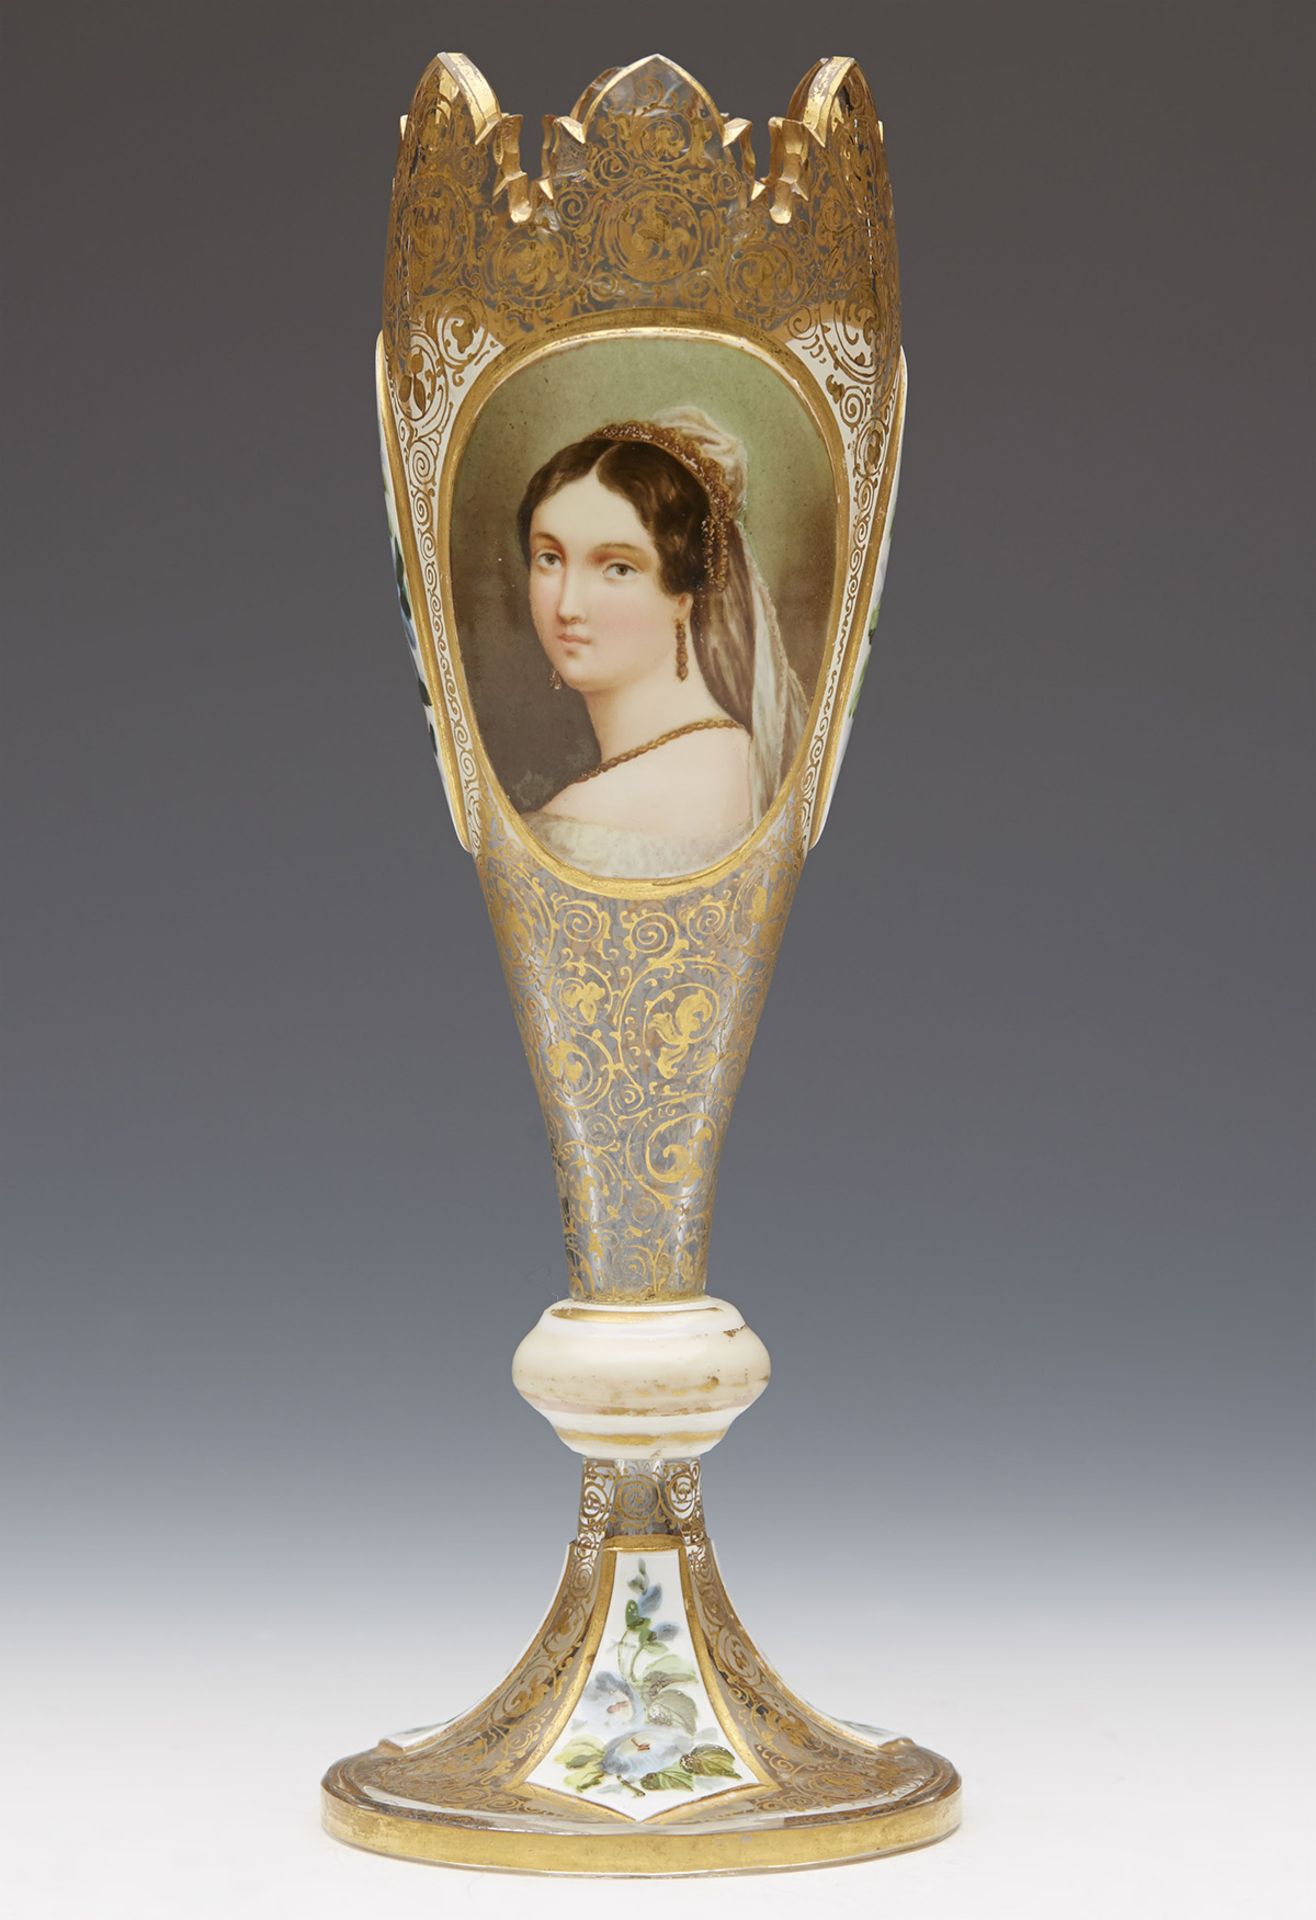 ANTIQUE BOHEMIAN PAINTED PORTRAIT GLASS VASE c.1880 - FREE UK DELIVERY